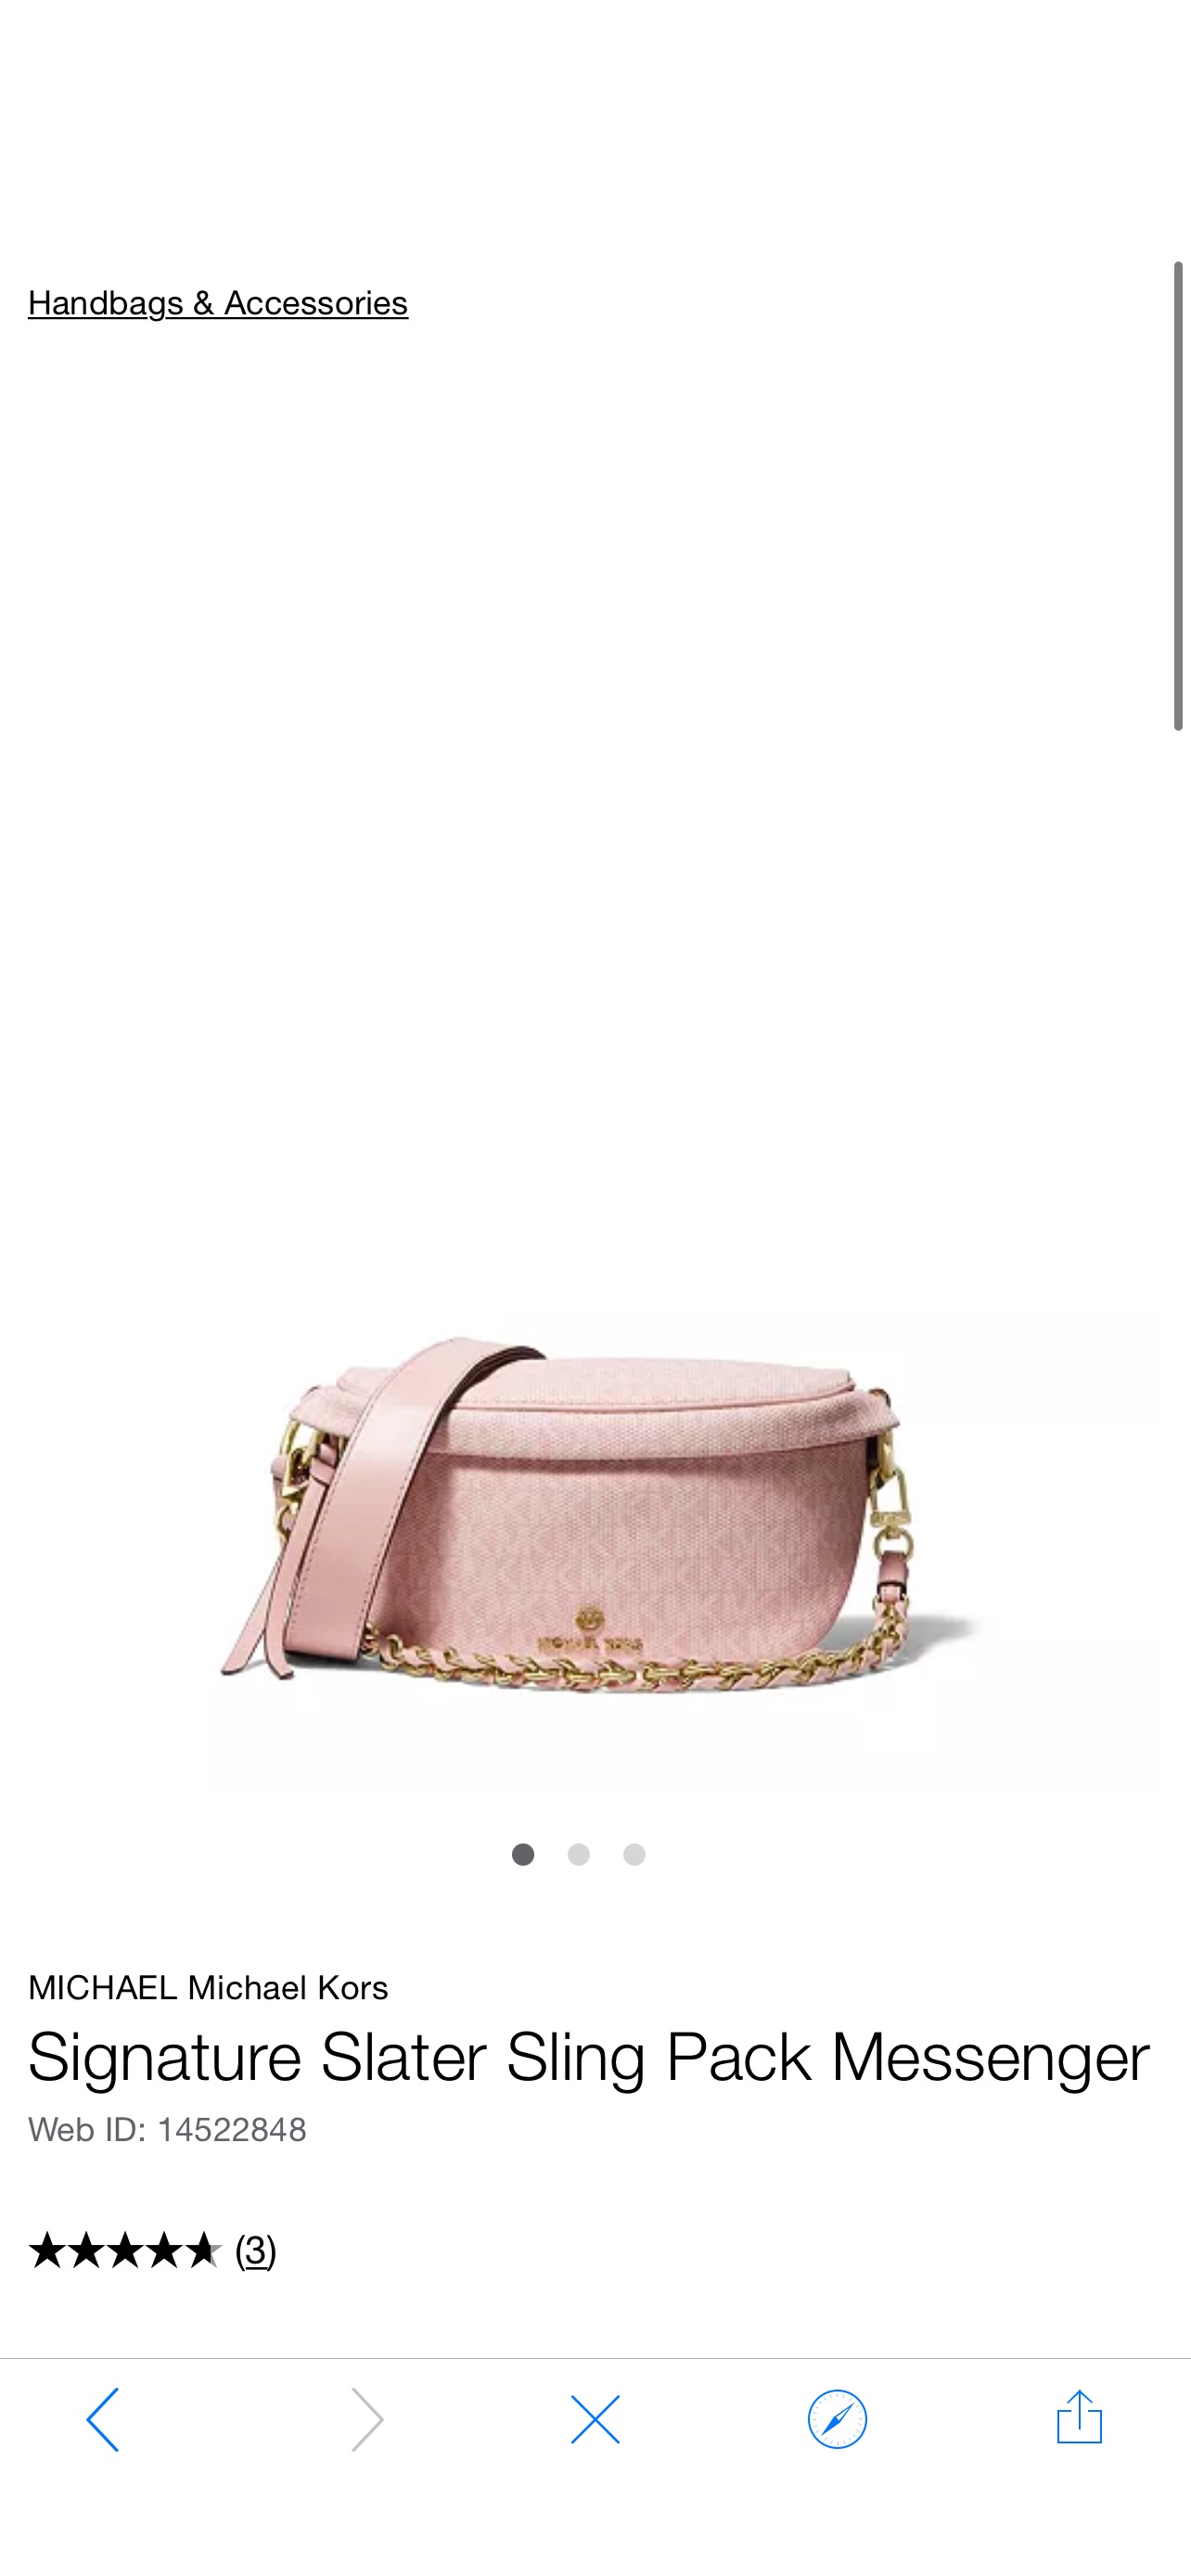 女士包Michael Kors Signature Slater Sling Pack Messenger & Reviews - Handbags & Accessories - Macy's